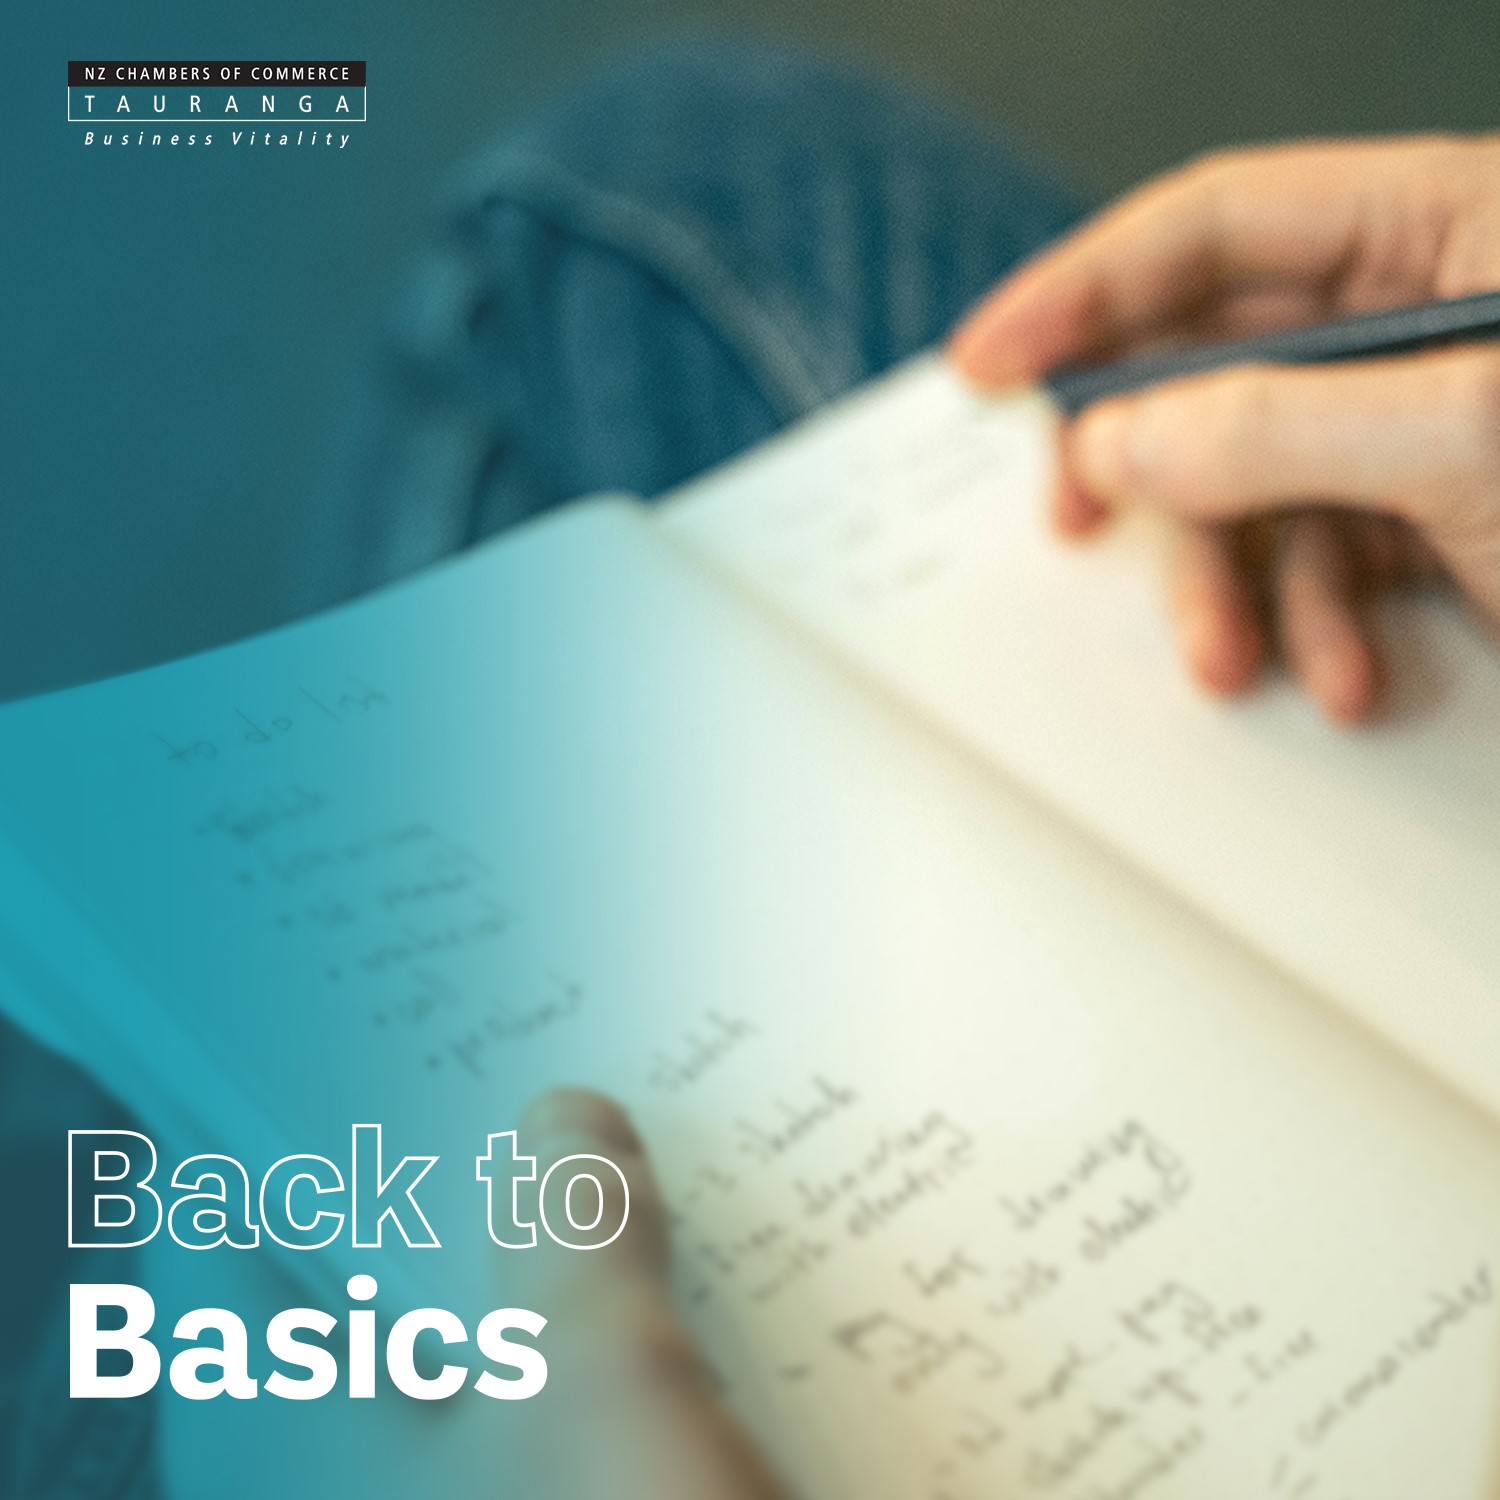 Back to basics fundamentals series